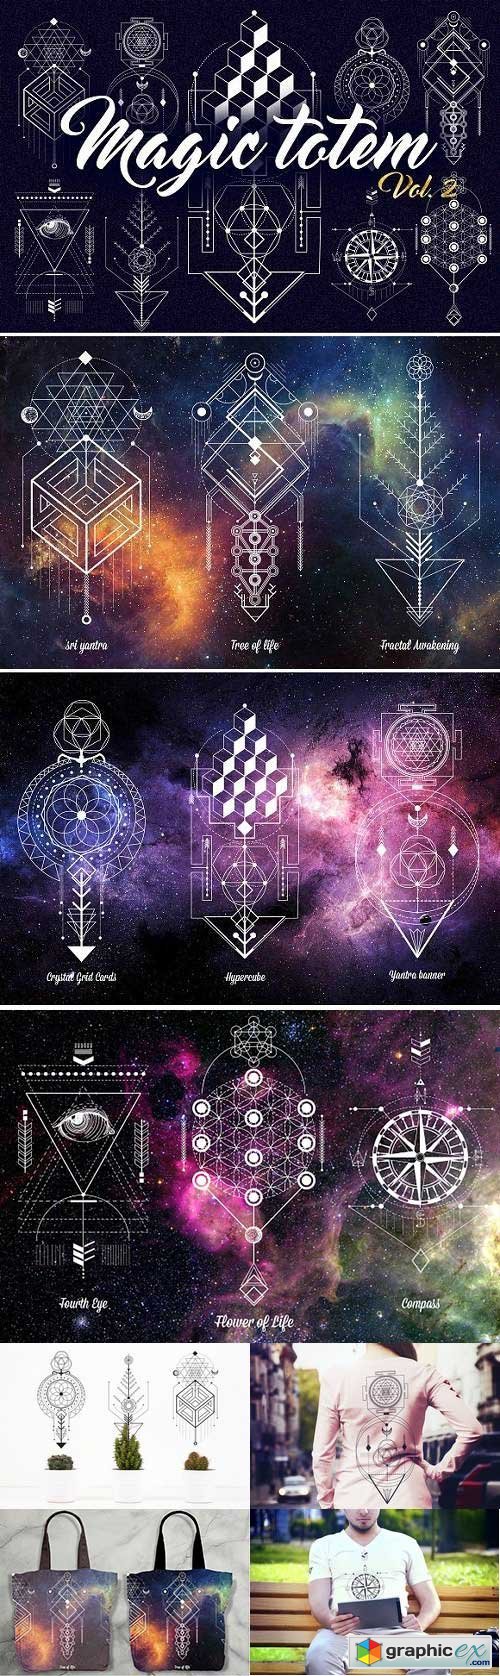 Sacred Geometry. Magic totem vol.2